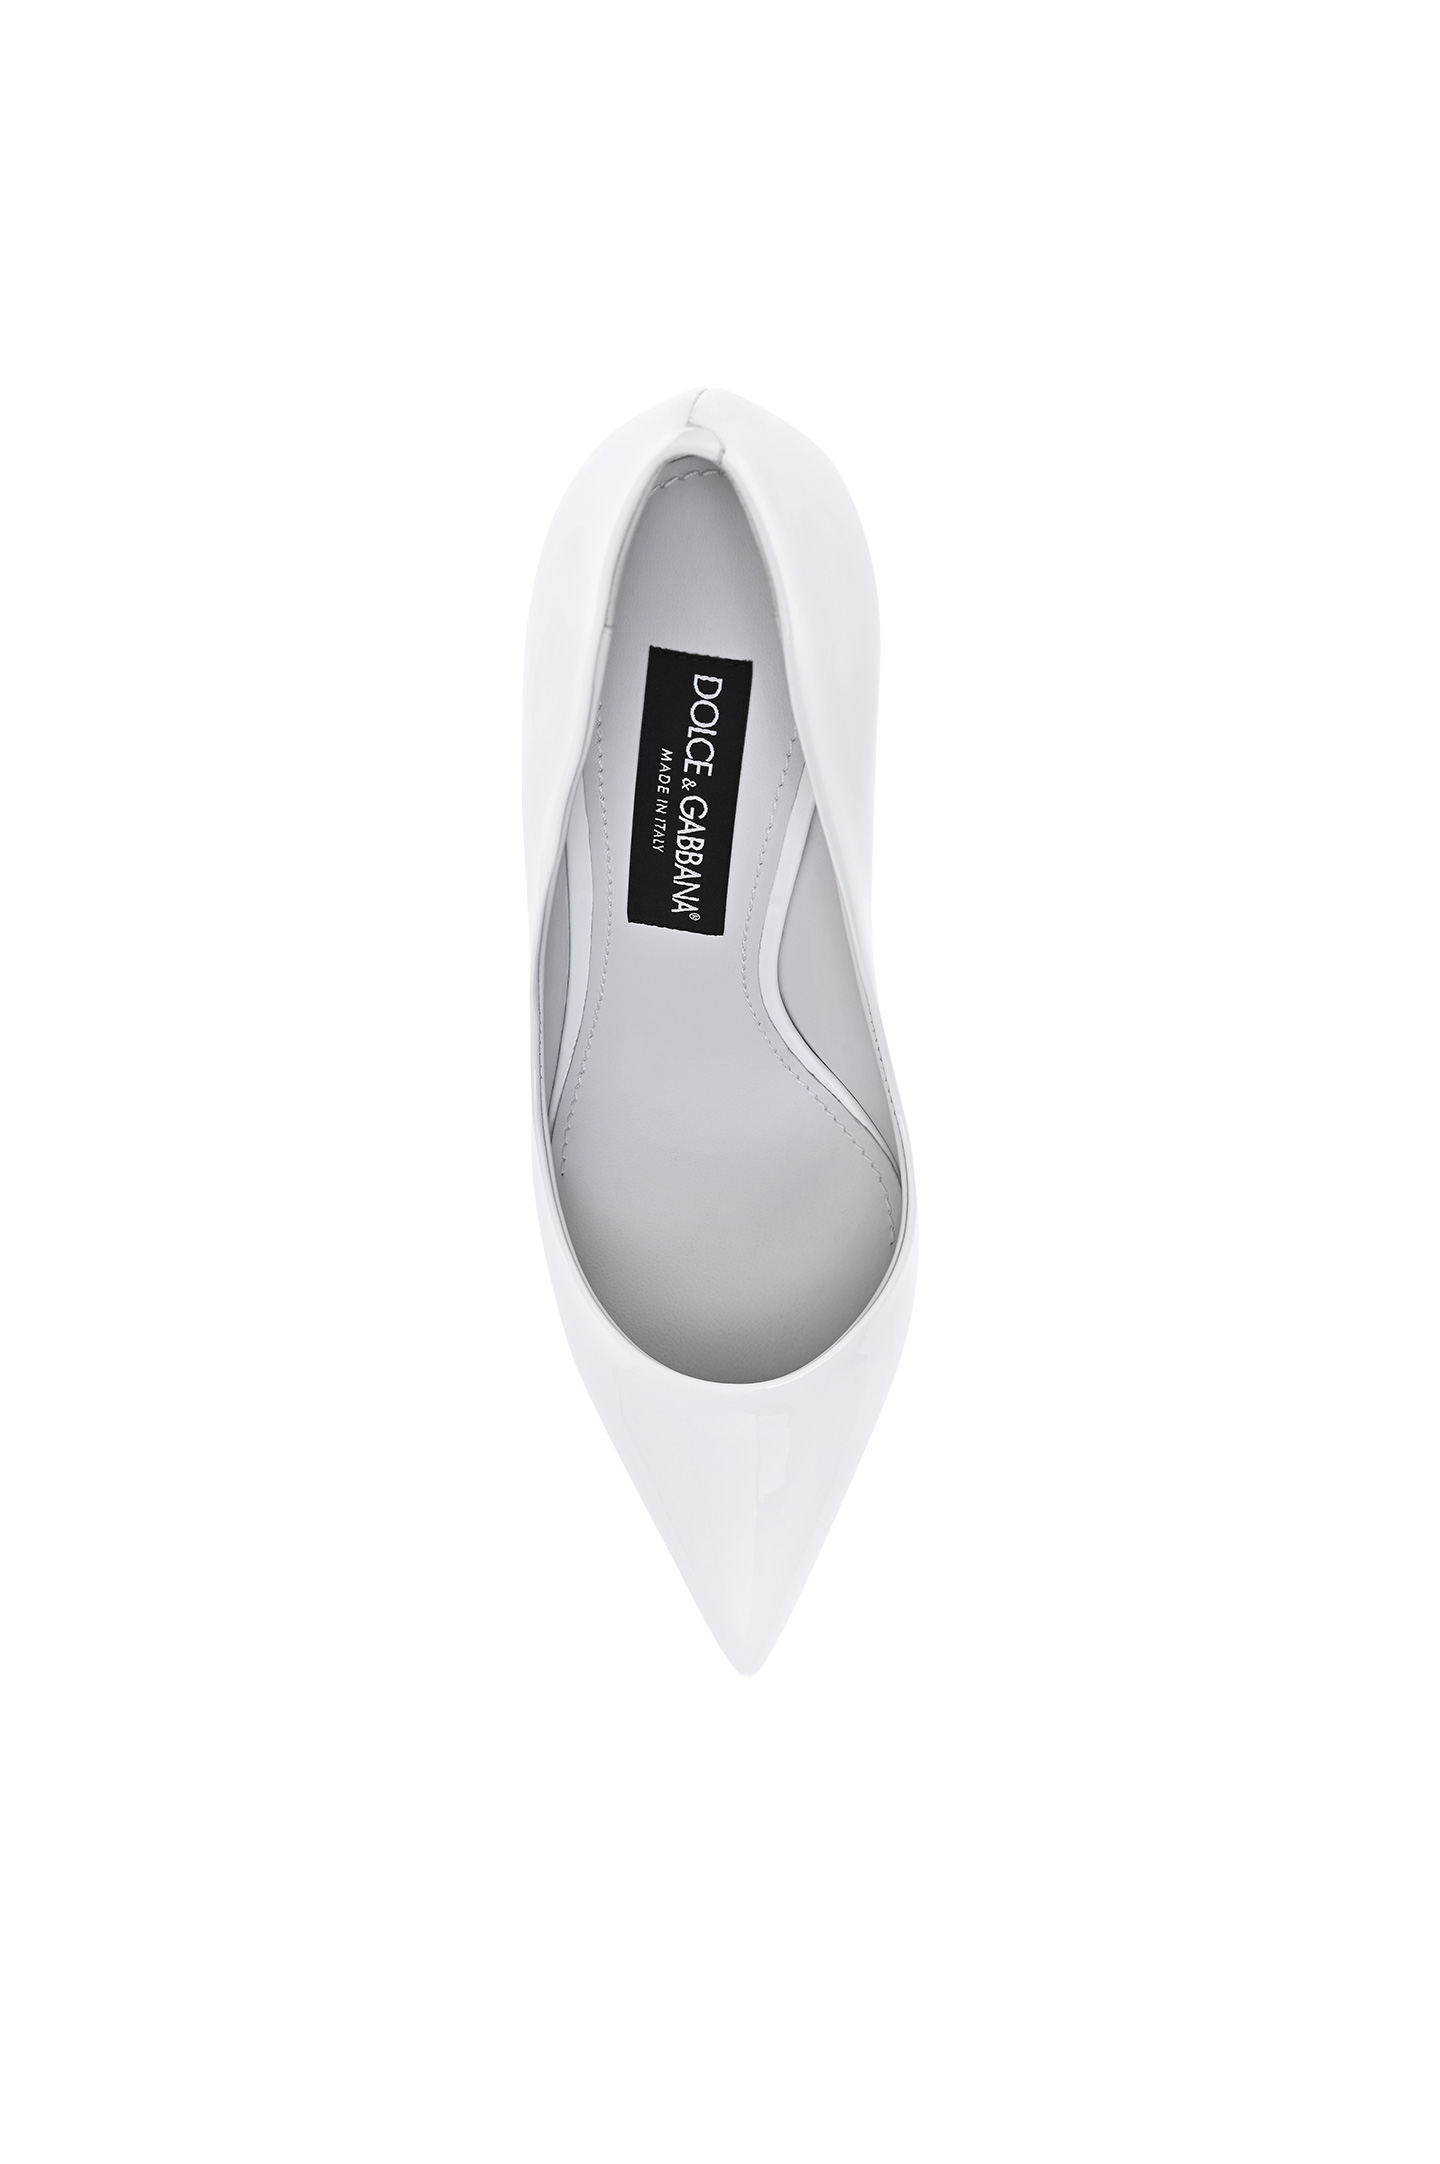 Туфли DOLCE & GABBANA CD1657 A1471, цвет: Белый, Женский